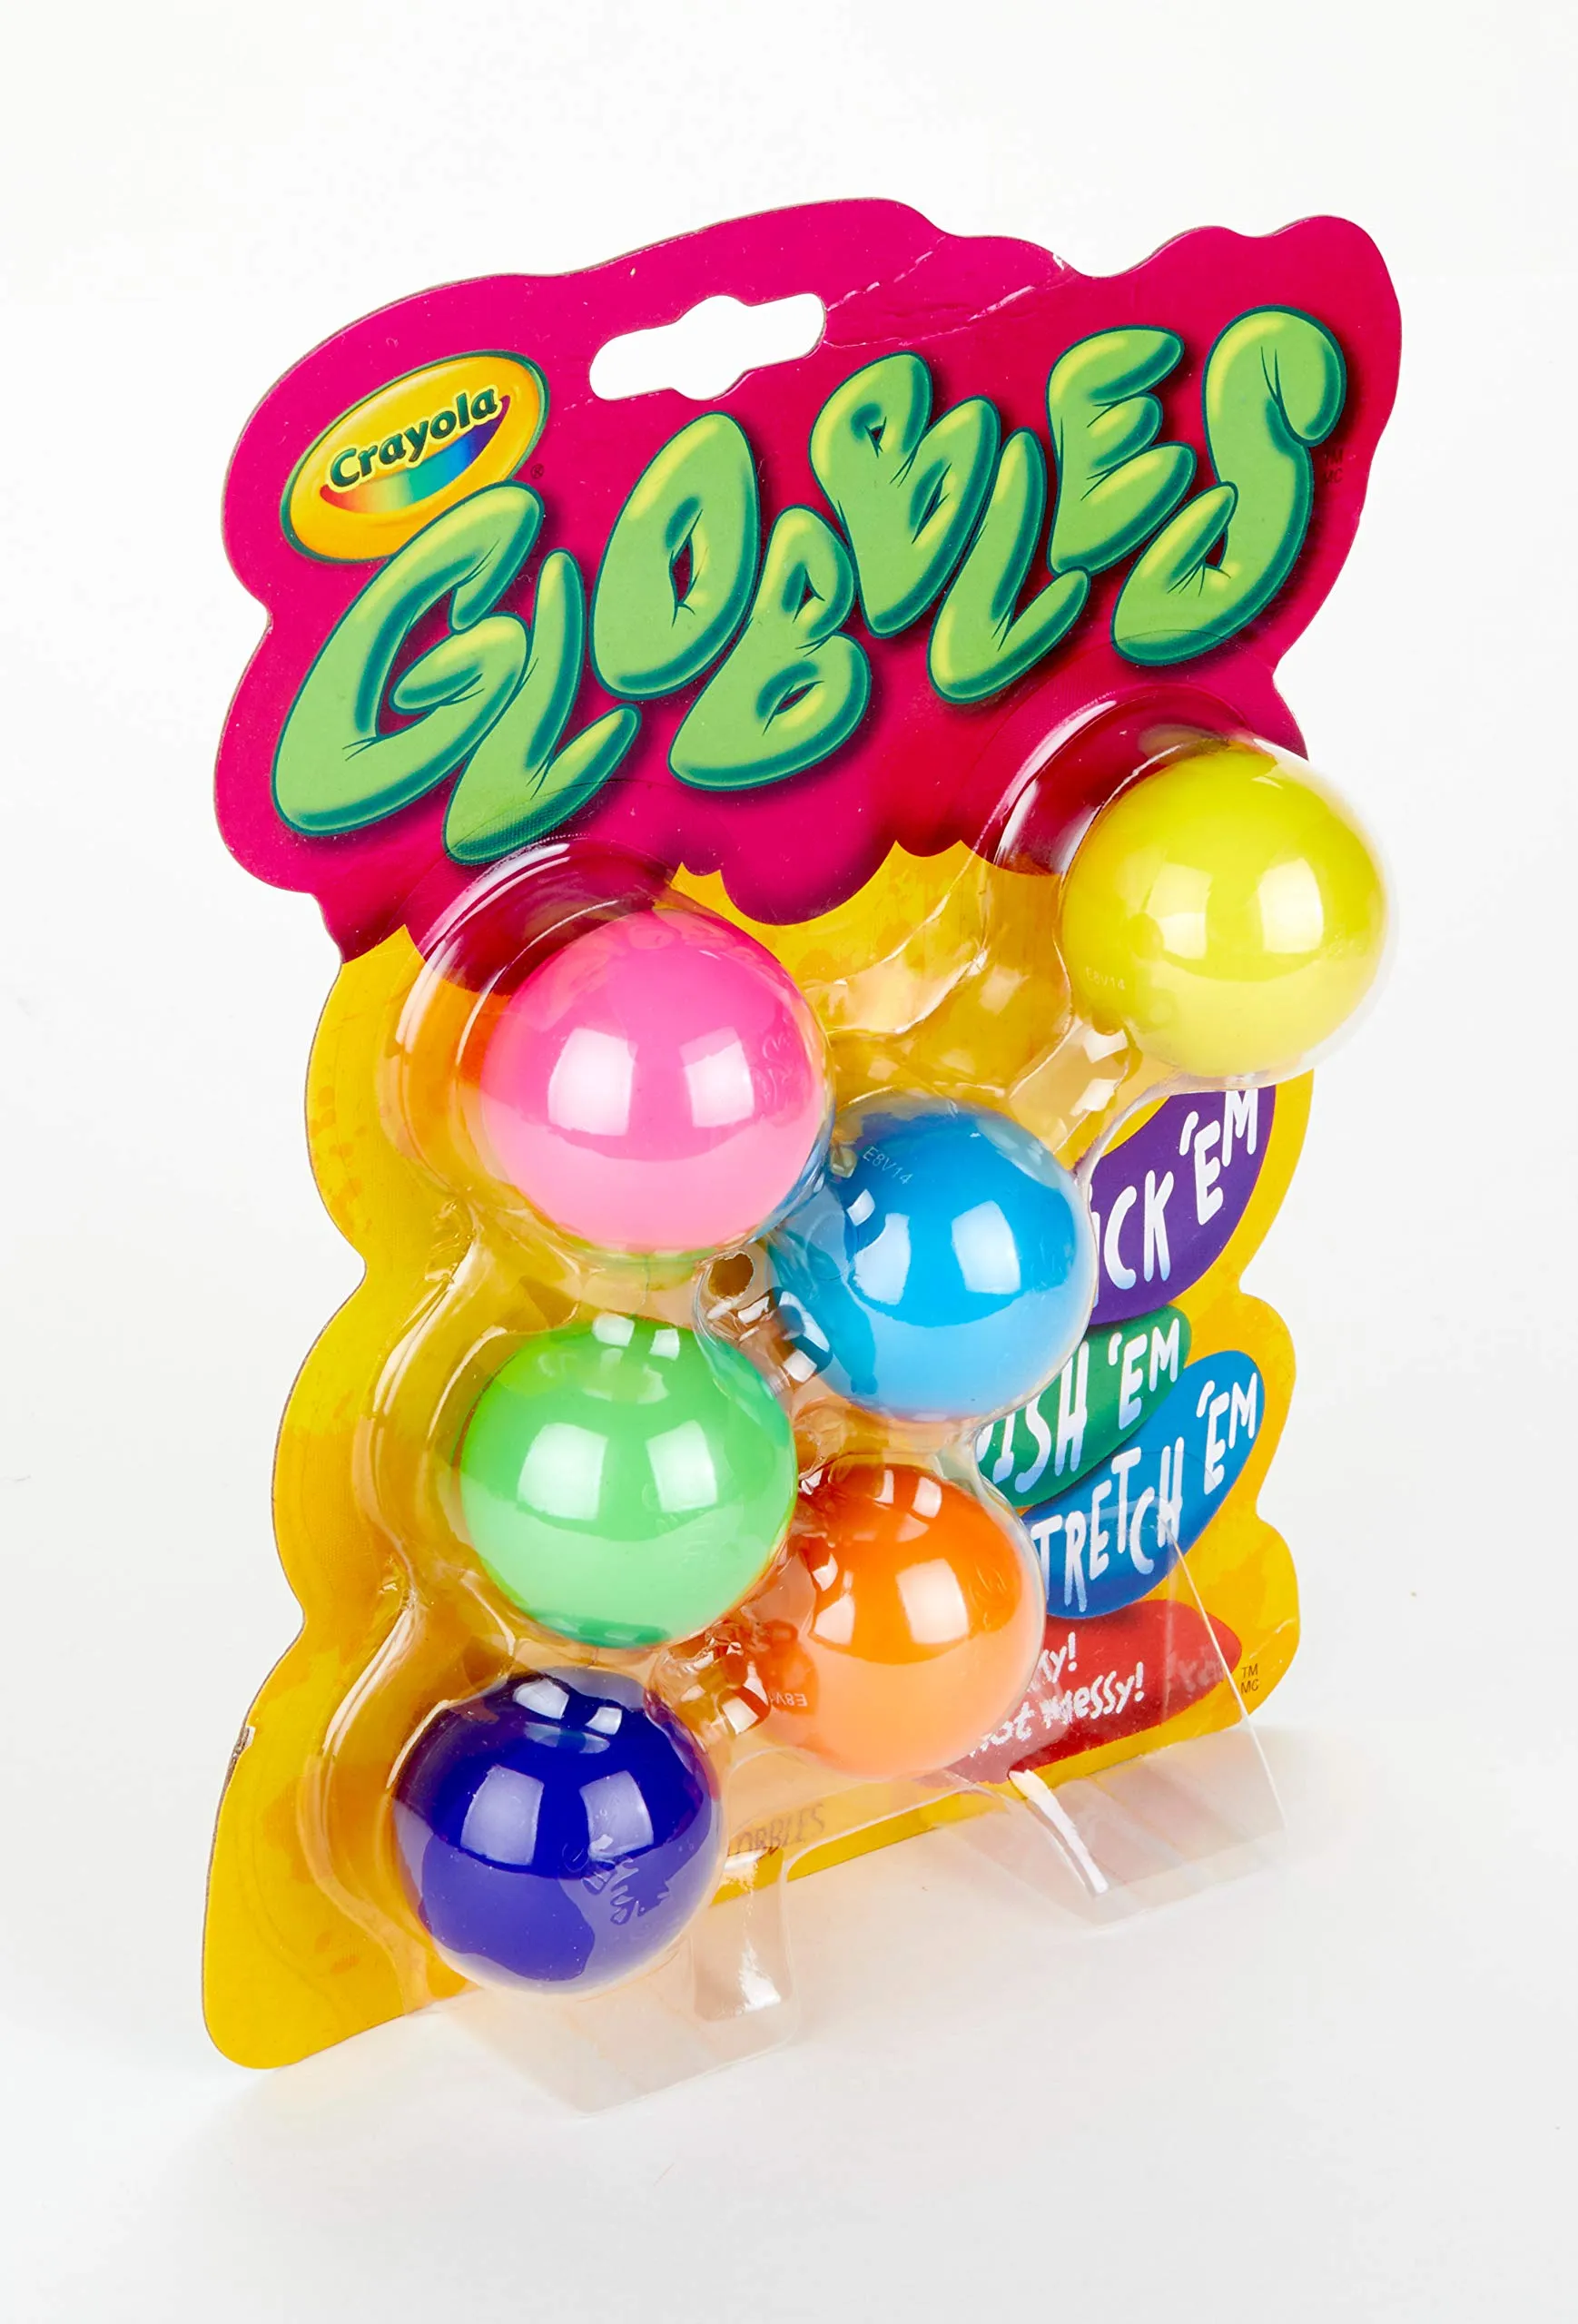 Globbles Hidget игрушка, липкие шары, рельеф стресса липкие целевые шарики, подарок для детей и взрослых